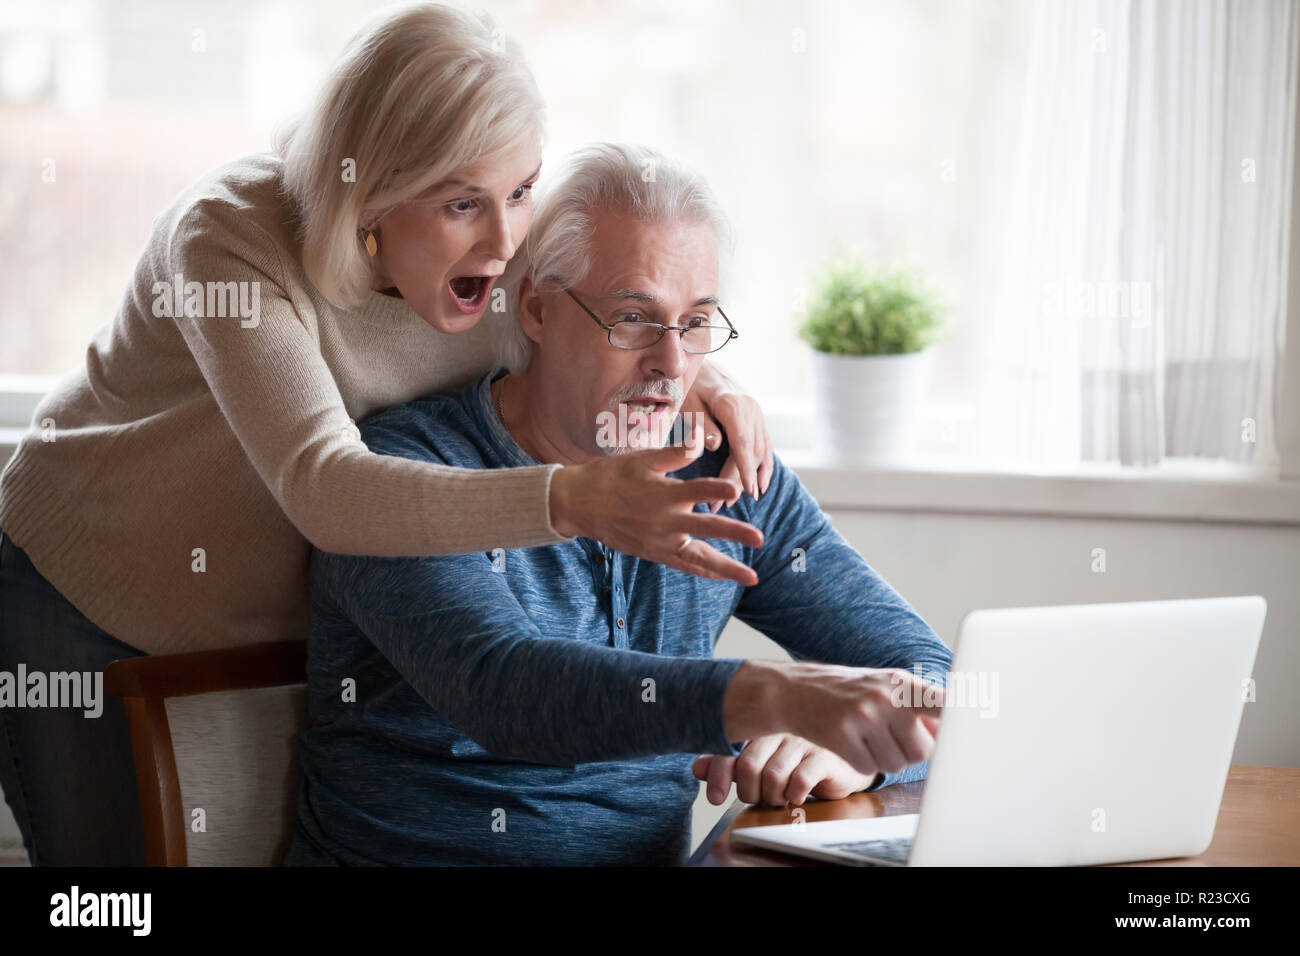 Älterer Mann und Frau an Laptop Bildschirm sehen unglaublich Informationen zeigen schockiert, im Alter von Paar beachten Sie unerwartete auf Computer überrascht, elderl Stockfoto